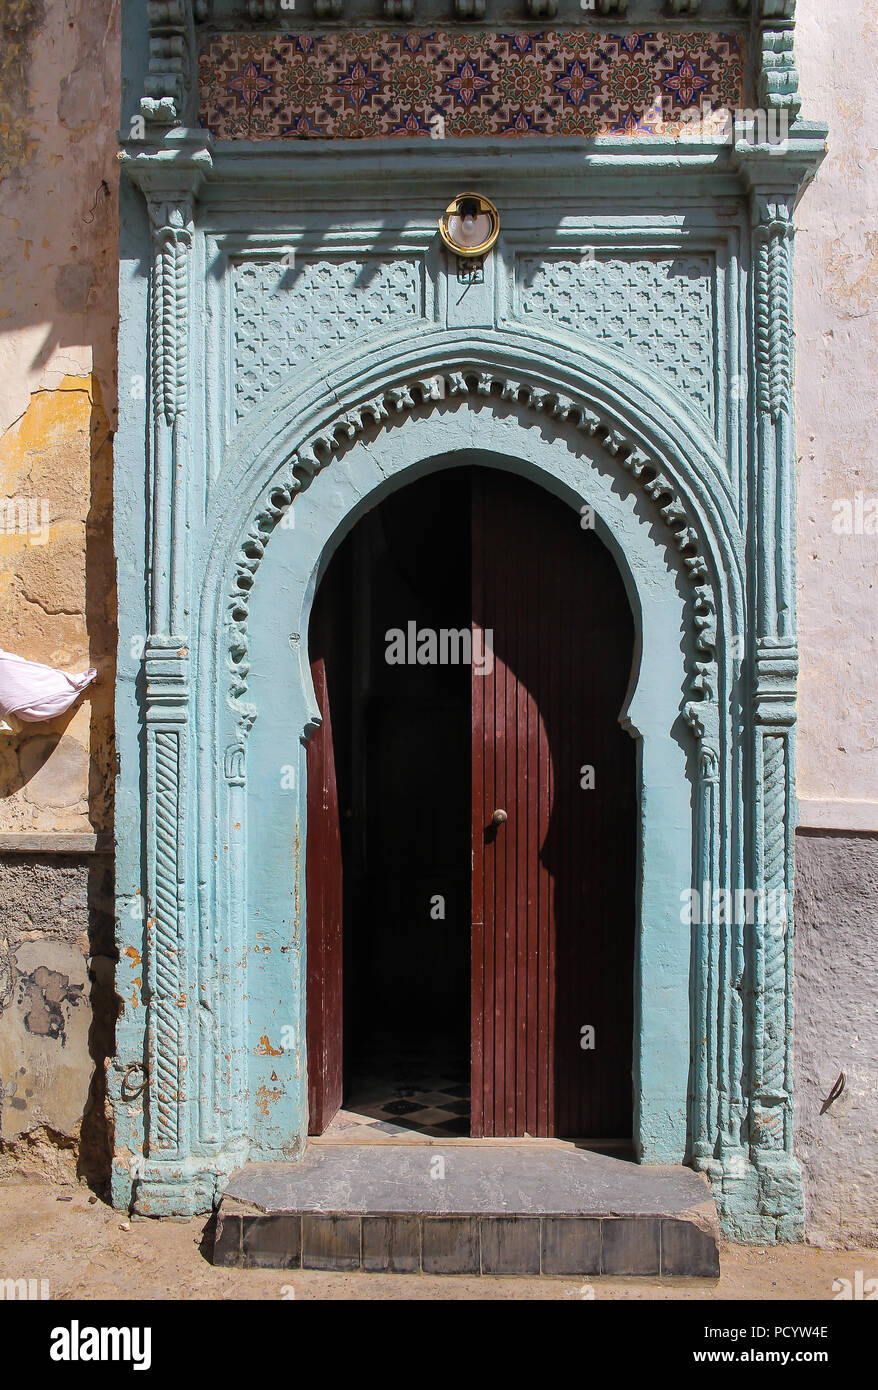 Barrière en bois peint en bleu clair avec de nombreux détails. Brown la moitié a ouvert la porte. Journée ensoleillée. Street à El Jadida, Maroc. Banque D'Images